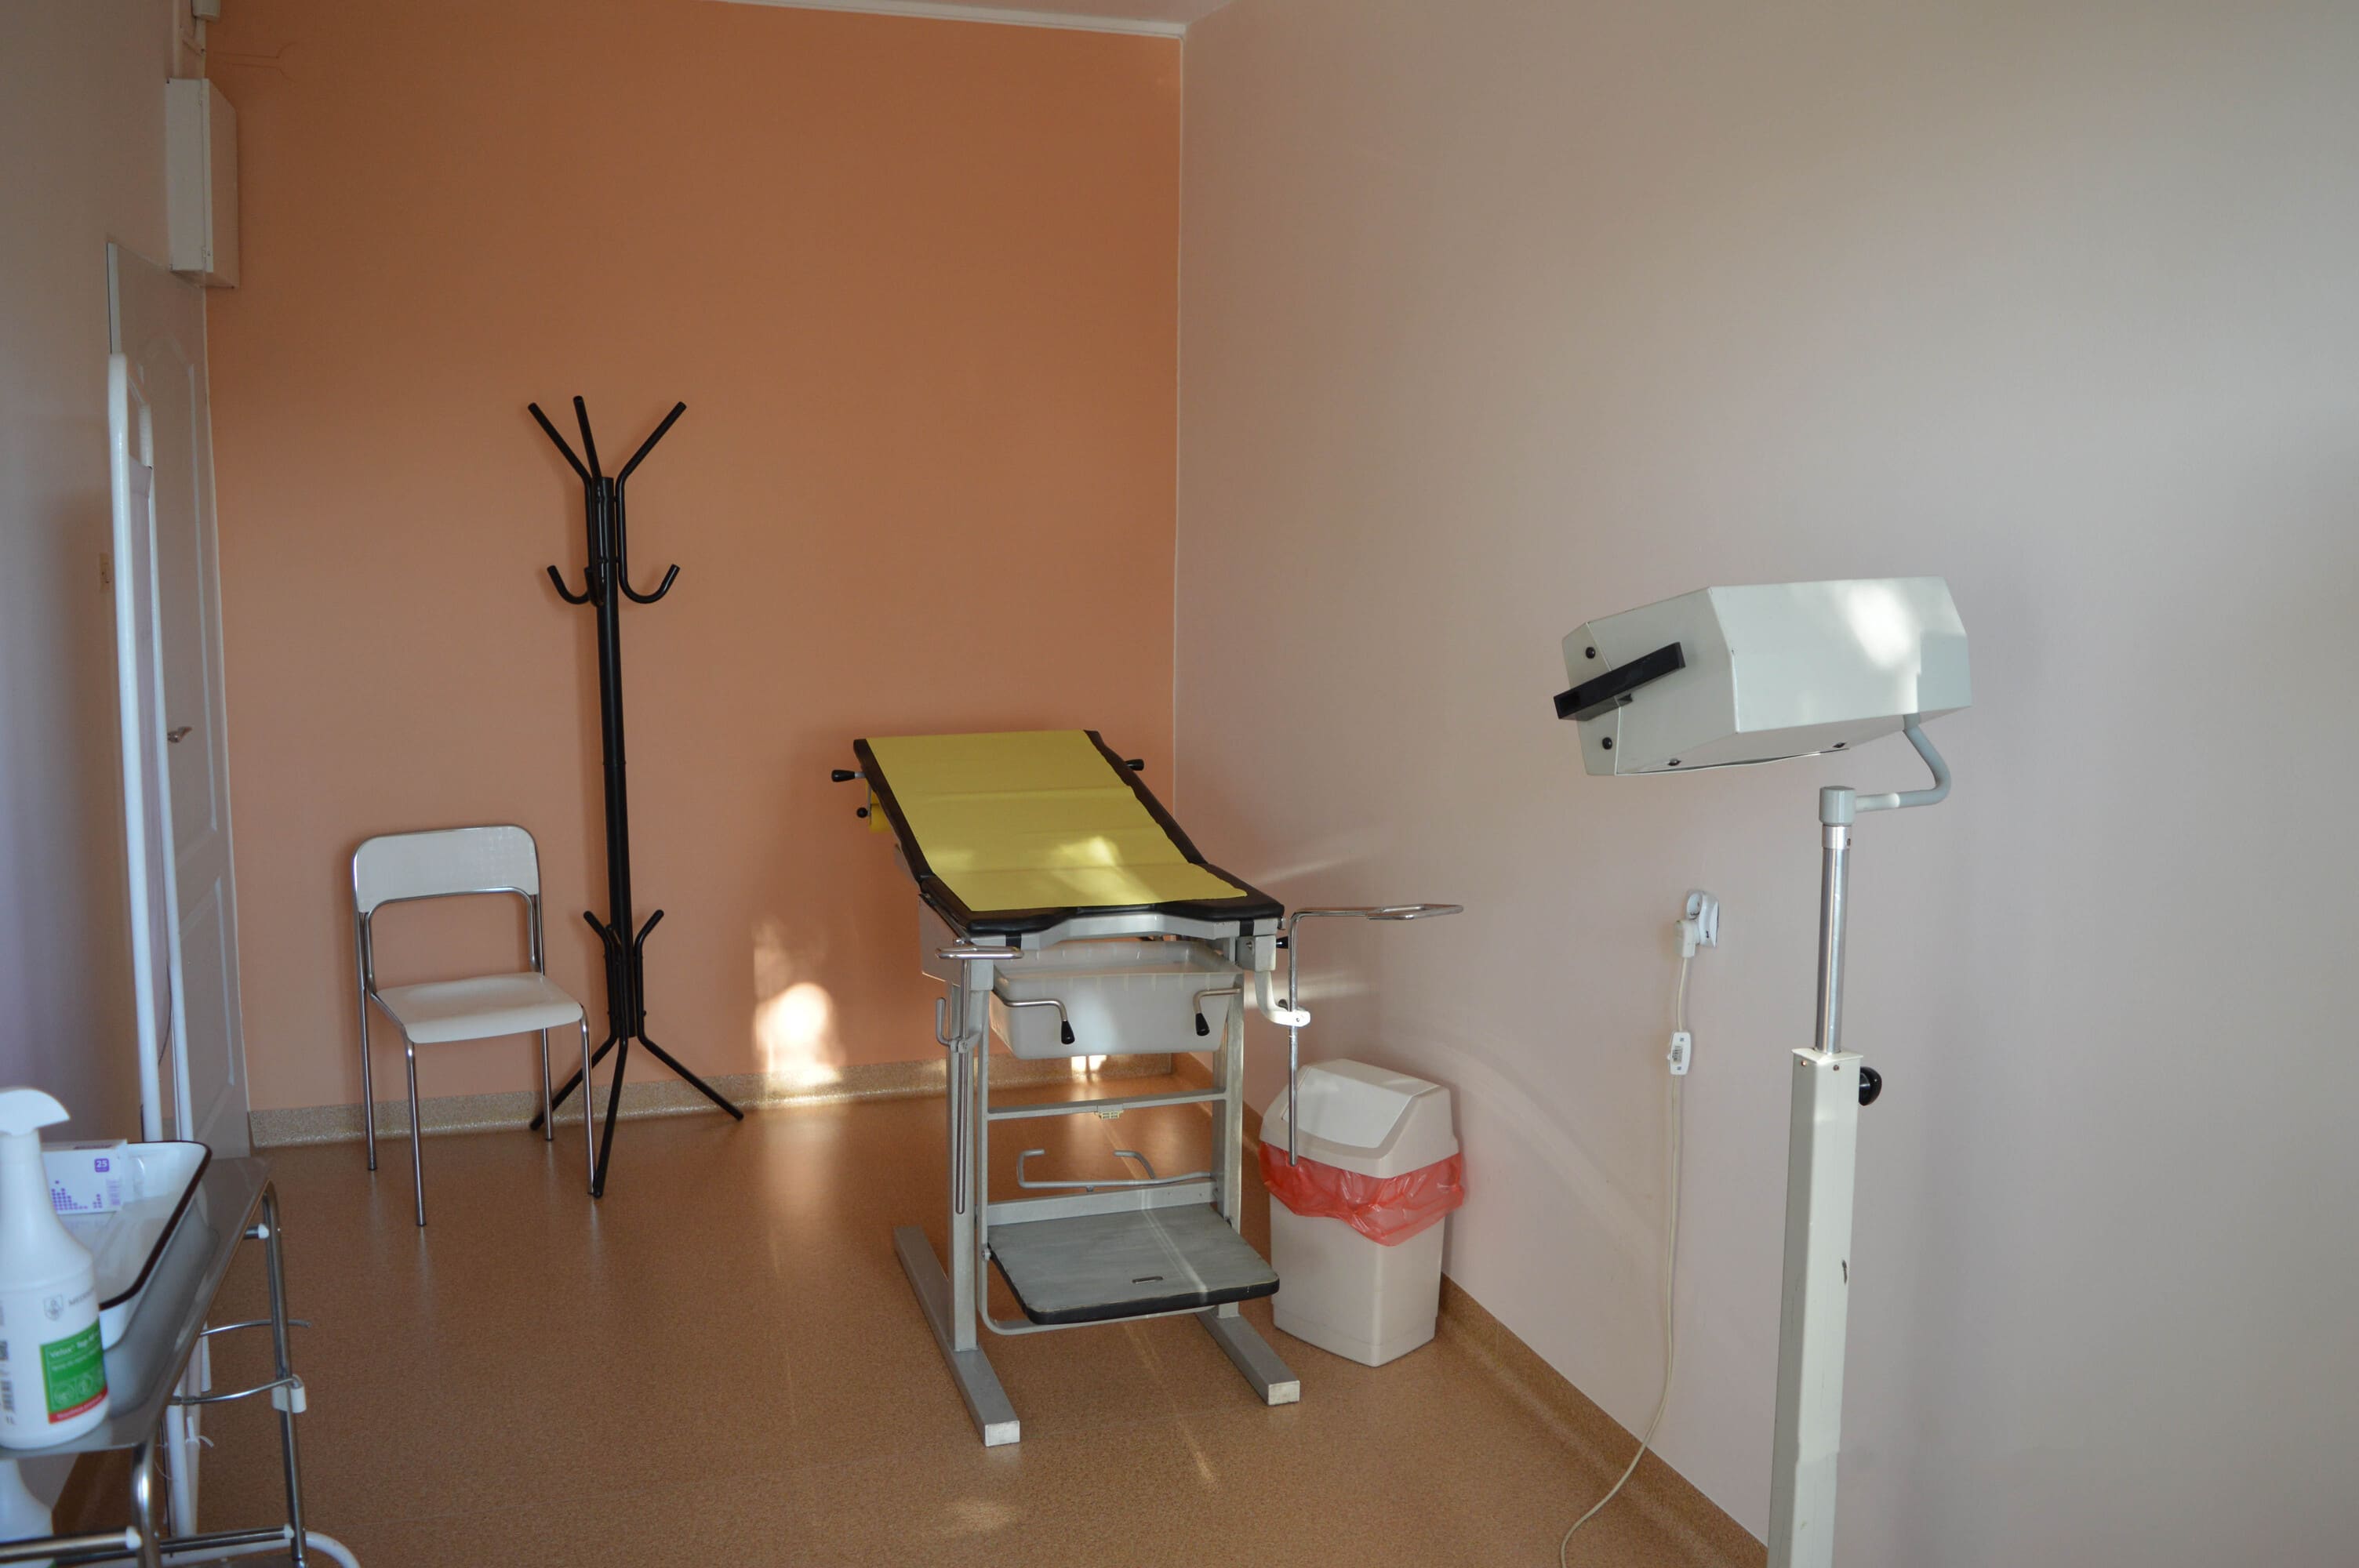 Gabinet ginekologiczny, w części centralnej  widoczna leżanka w kolorze żółtym oraz lampa na podnośniku.